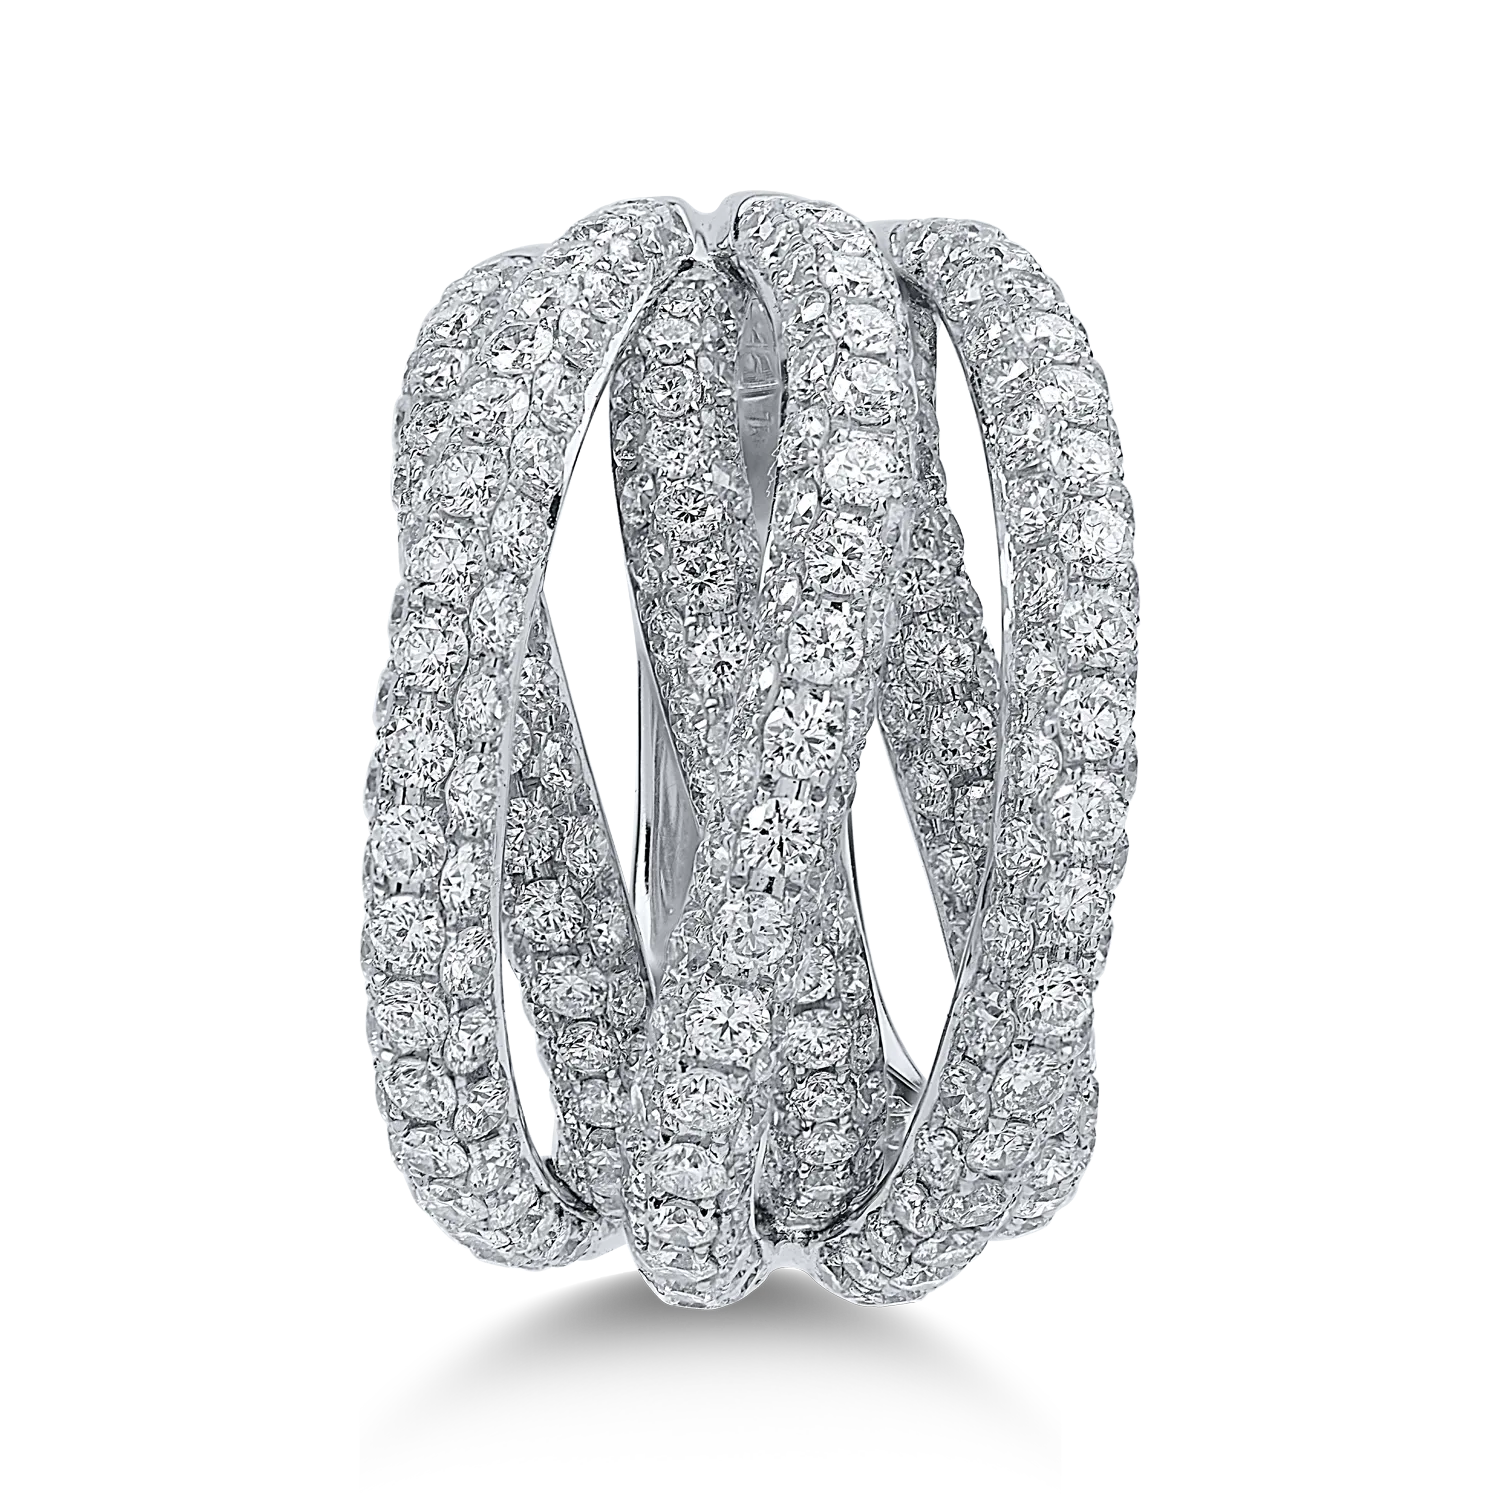 Fehérarany gyűrű 4.72ct gyémántokkal